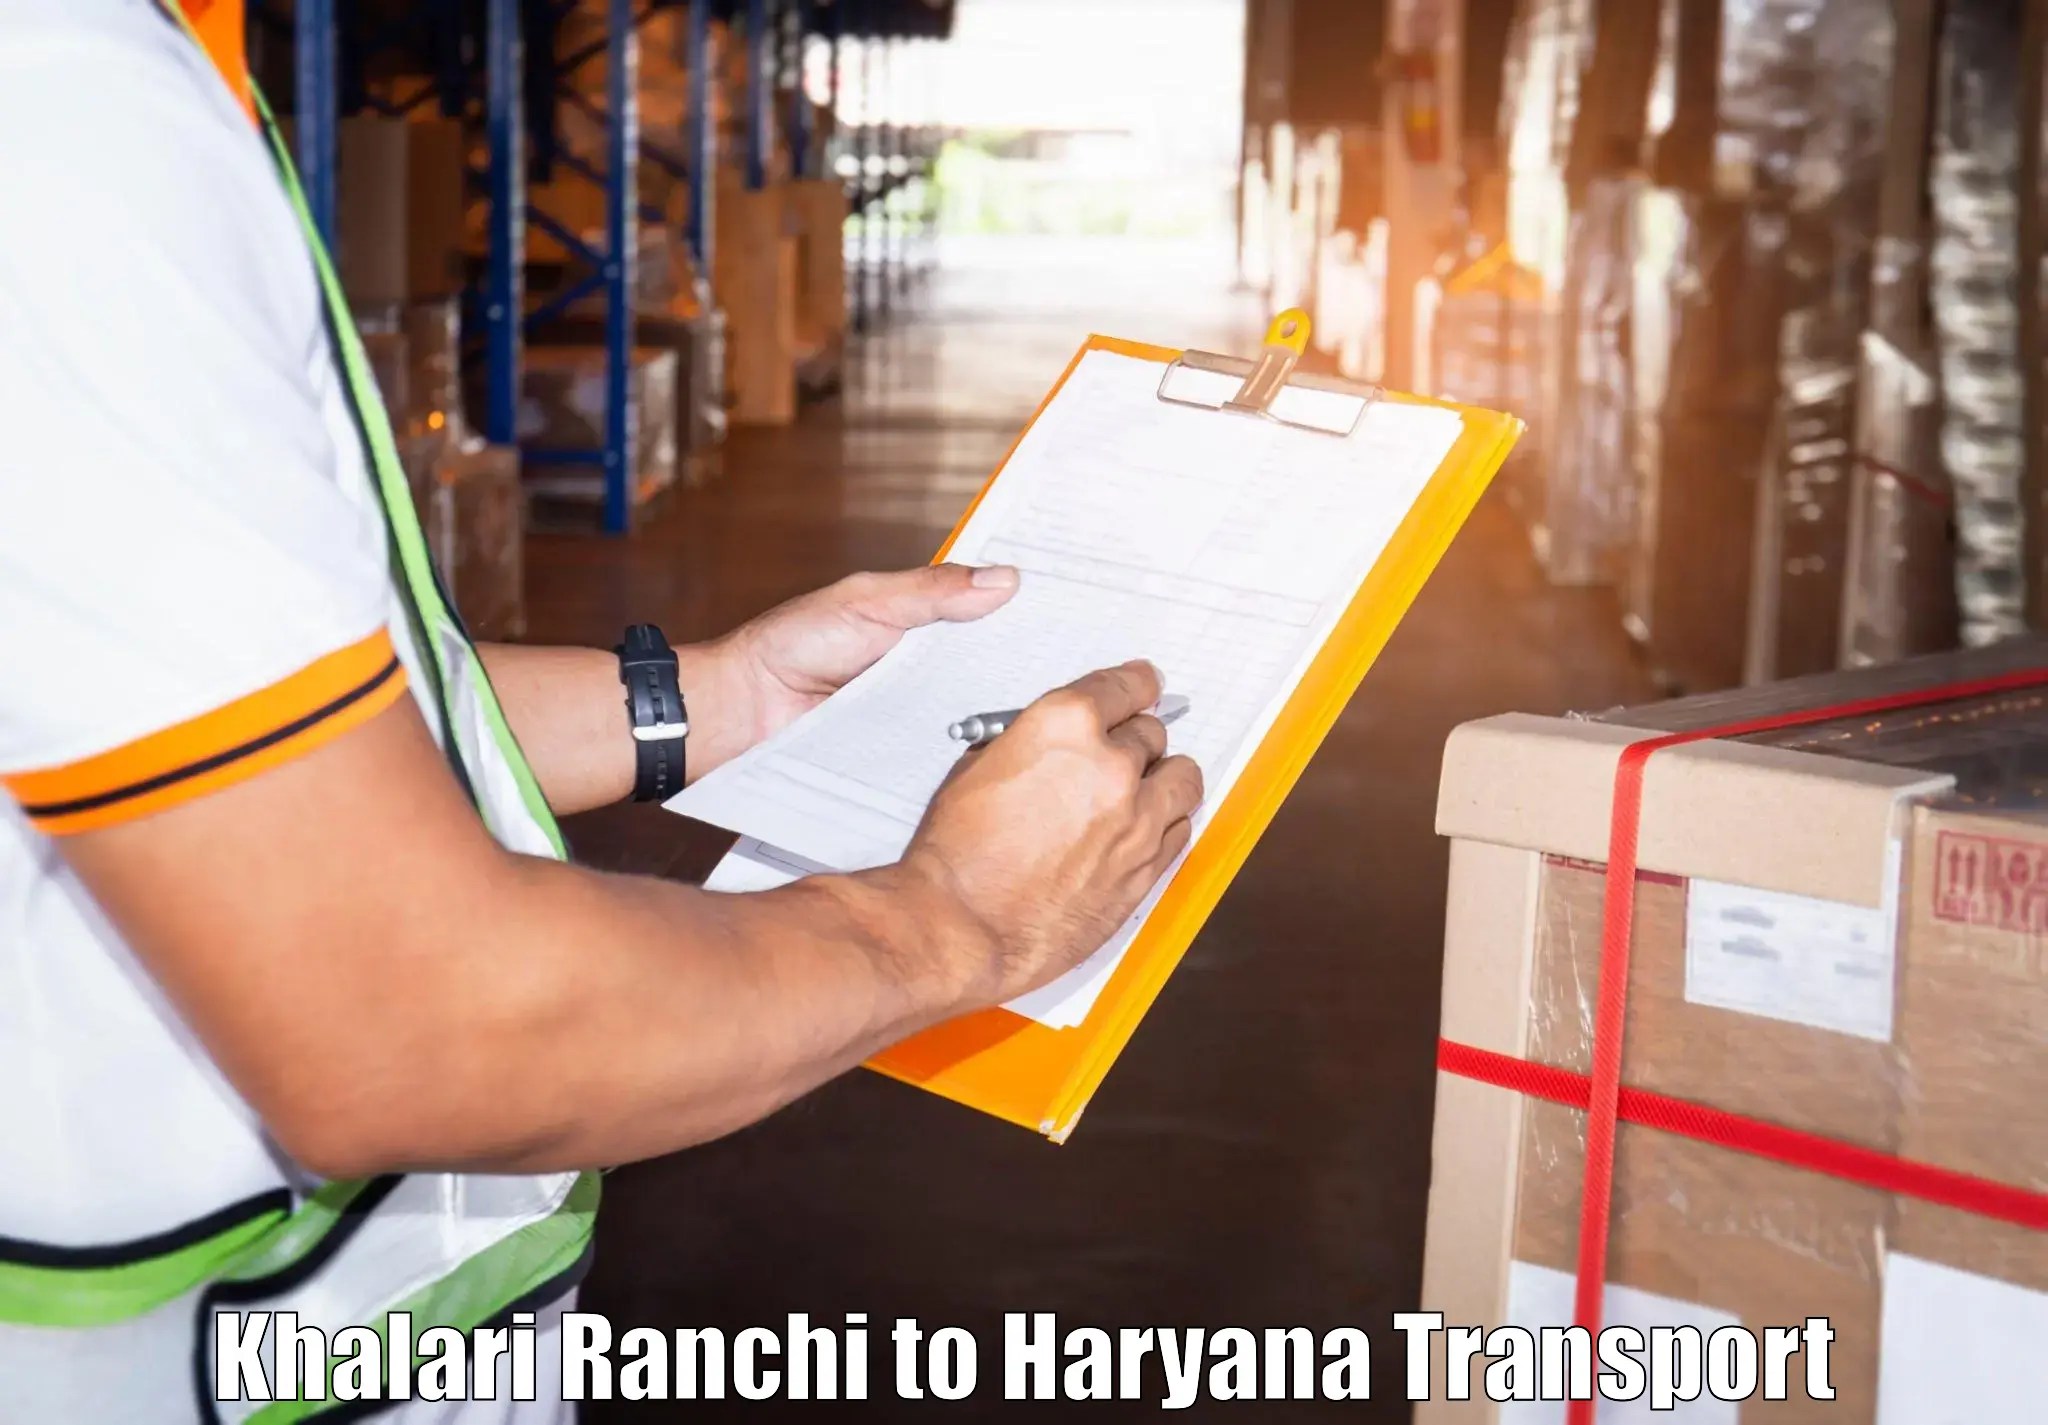 Two wheeler parcel service Khalari Ranchi to Odhan